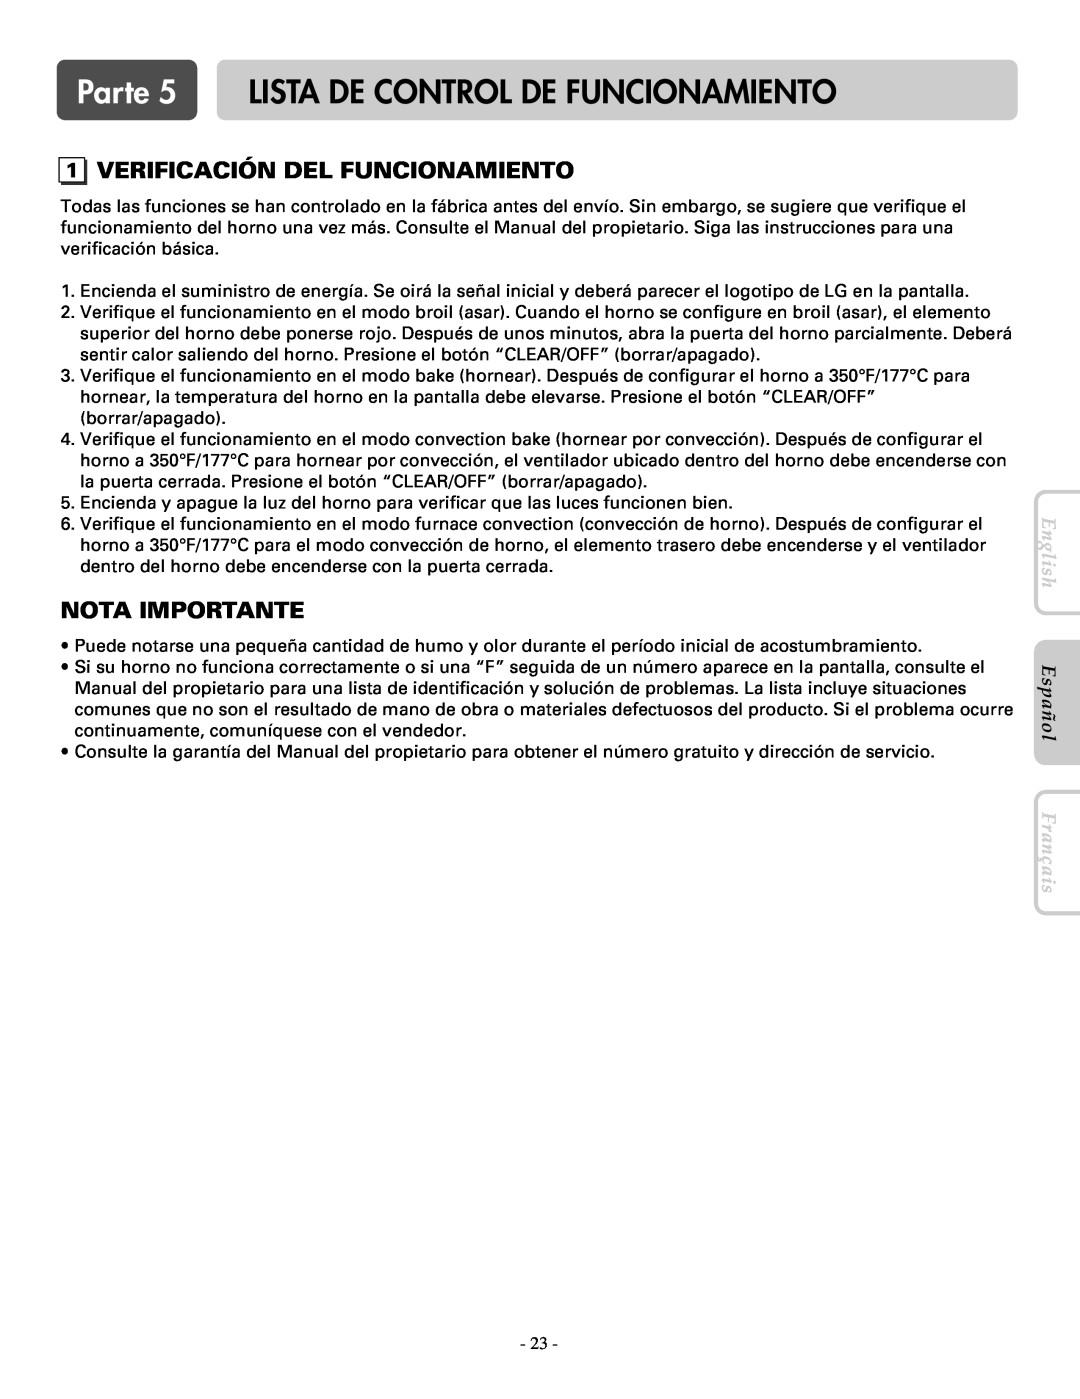 LG Electronics LWD3081ST Parte 5 LISTA DE CONTROL DE FUNCIONAMIENTO, Verificación Del Funcionamiento, Nota Importante 